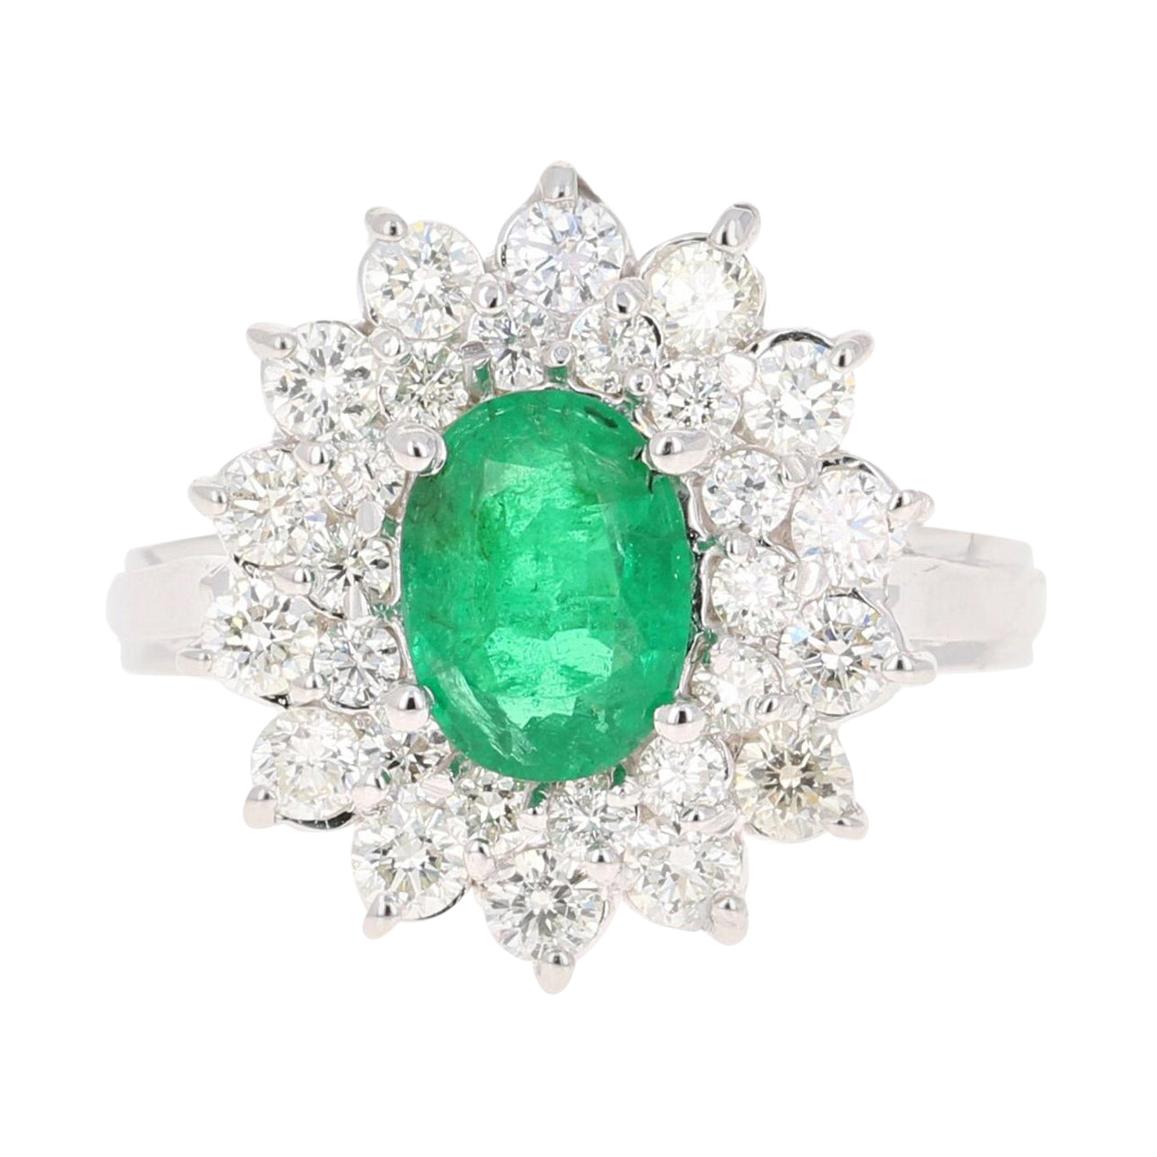 GIA Certified 2.29 Carat Emerald Diamond 18 Karat White Gold Engagement Ring